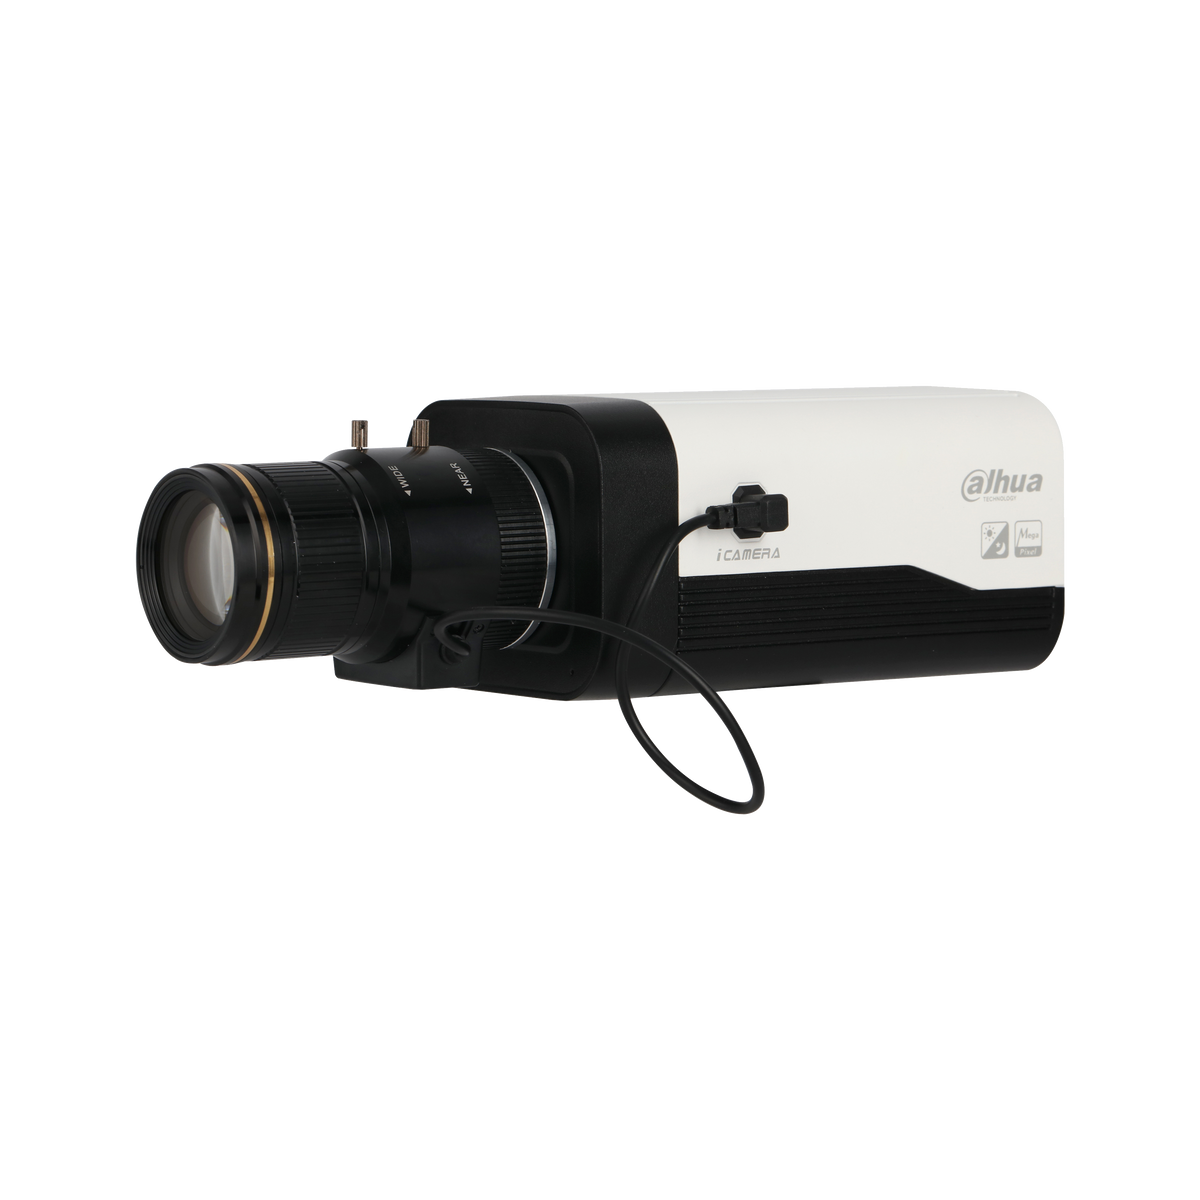 DAHUA IPC-HF8232F-E 2MP Starlight Box Network Camera